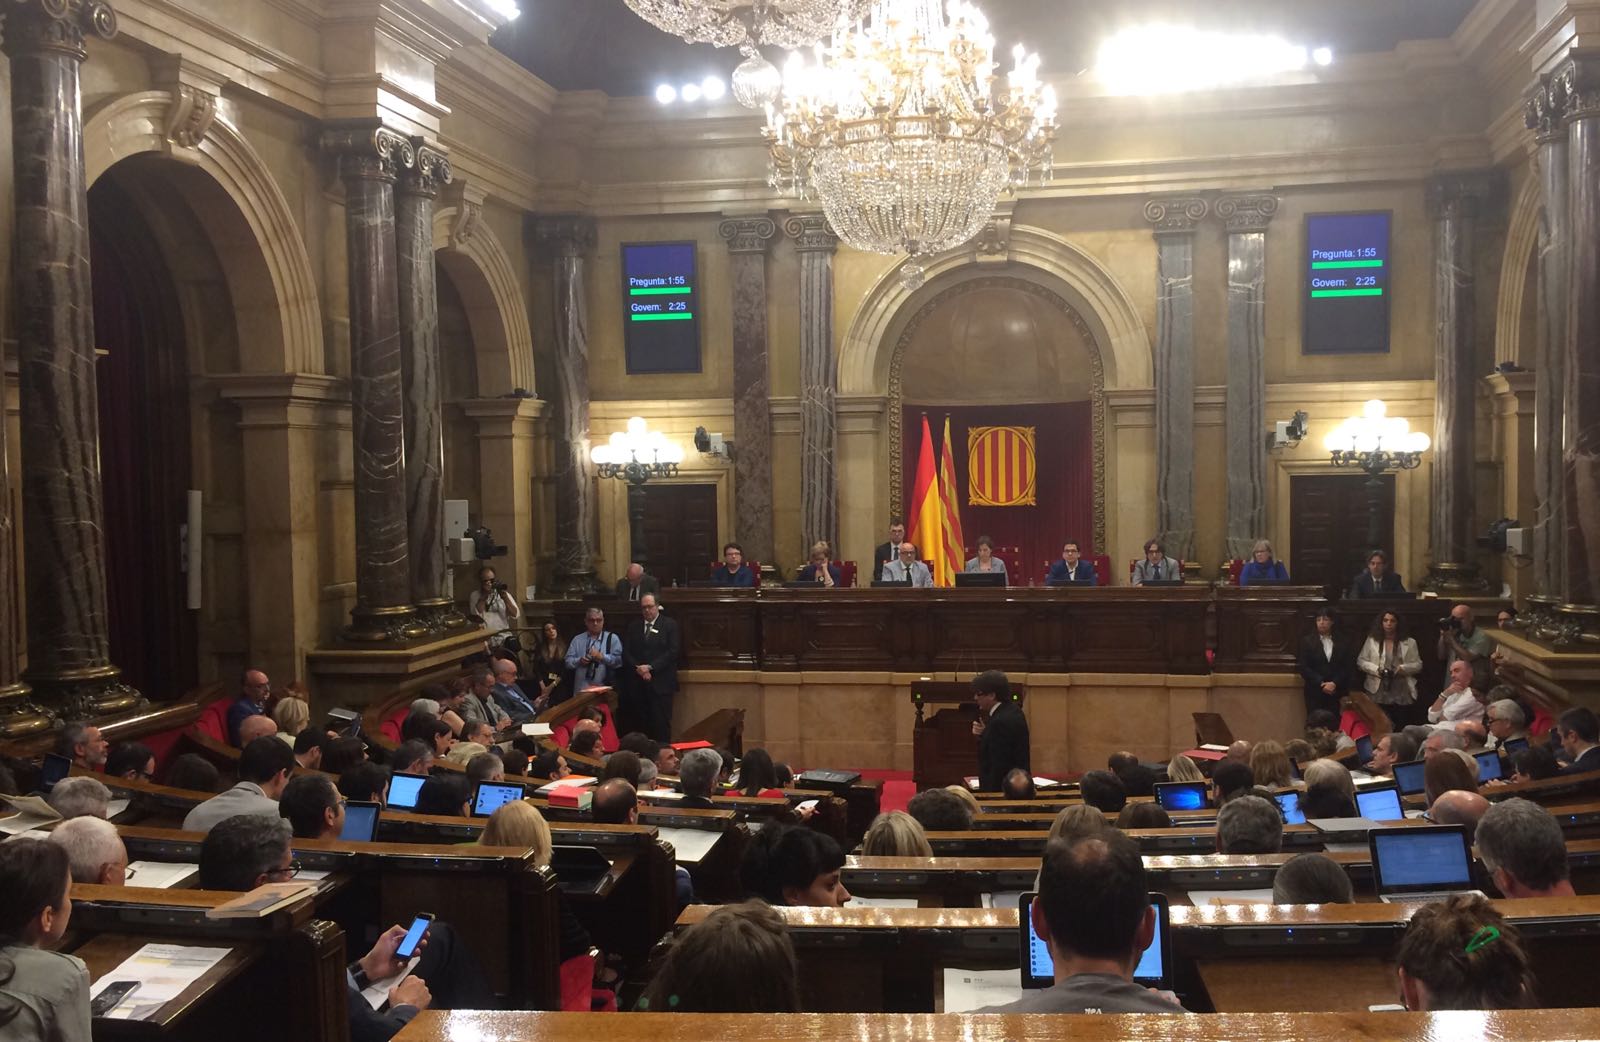 Cleca de Puigdemont a CSQP: "Jo sé qui ha intentat manipular el Pacte pel Referèndum"